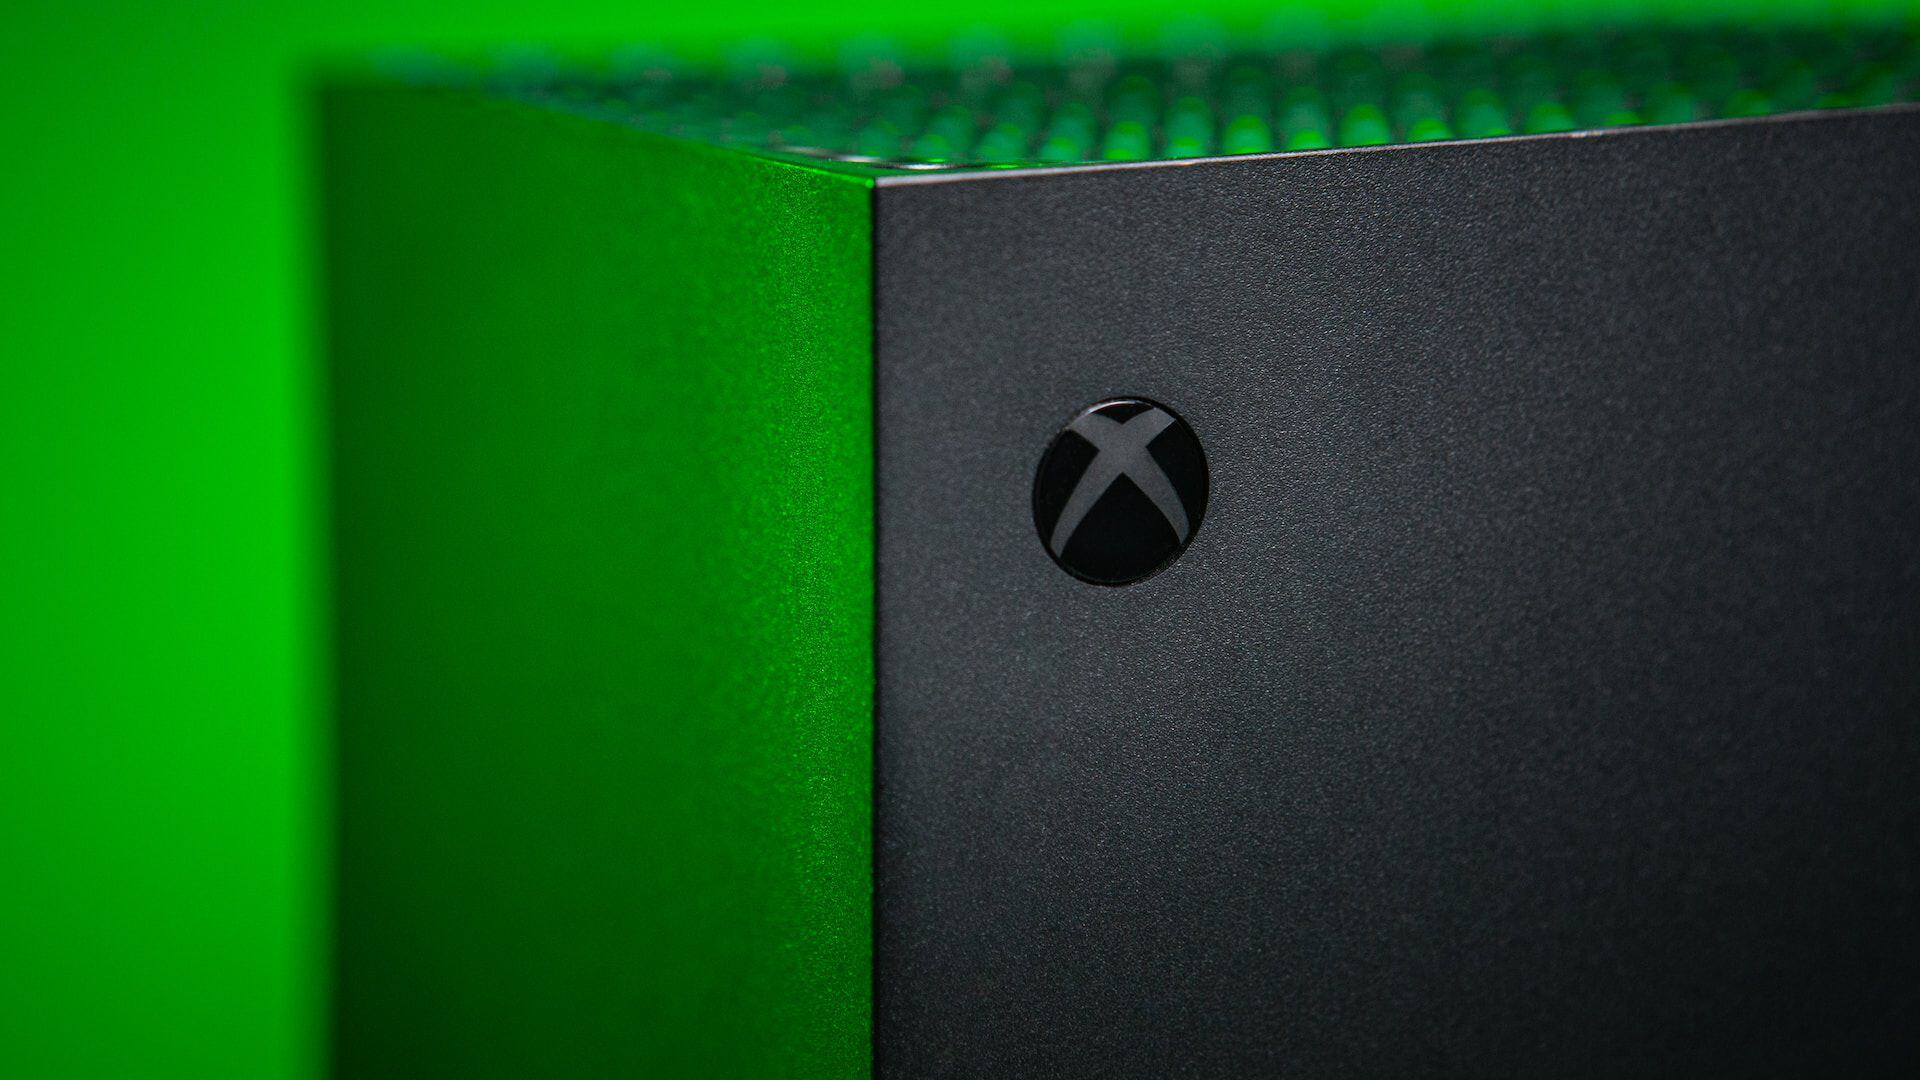 Xbox también podría estar preparando la llegada de una consola portátil